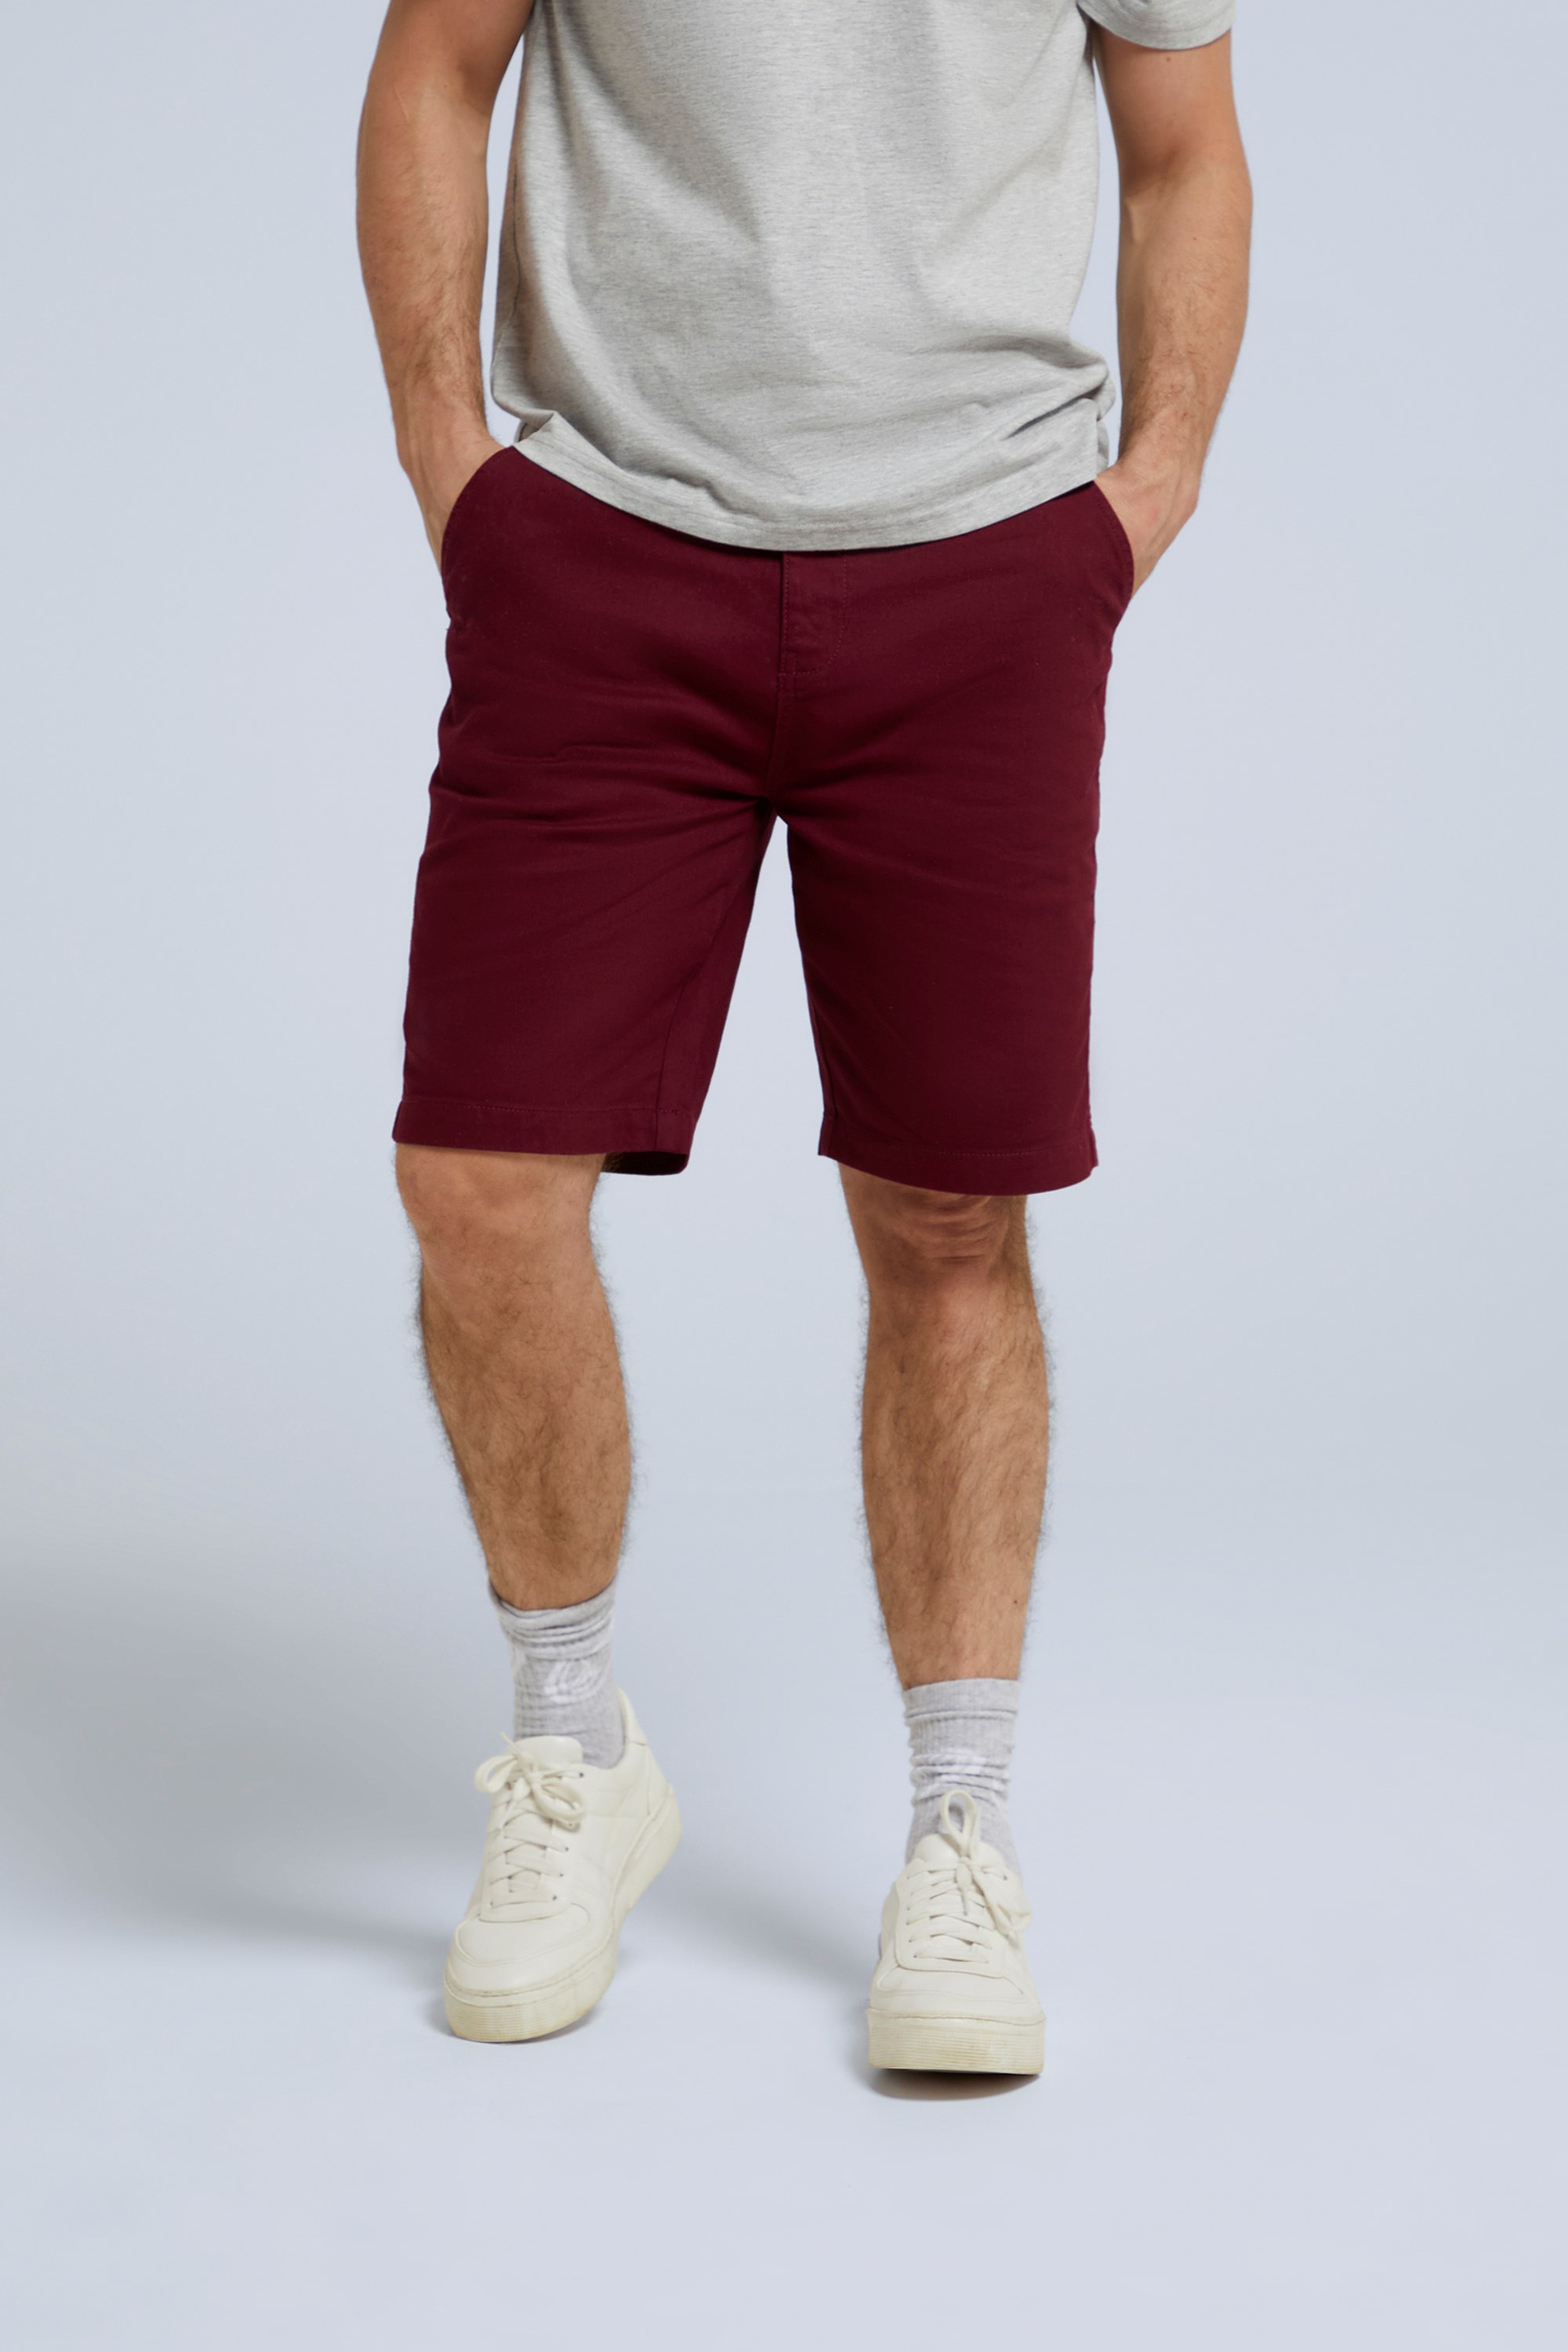 Westbay Mens Organic Chino Shorts - Burgundy